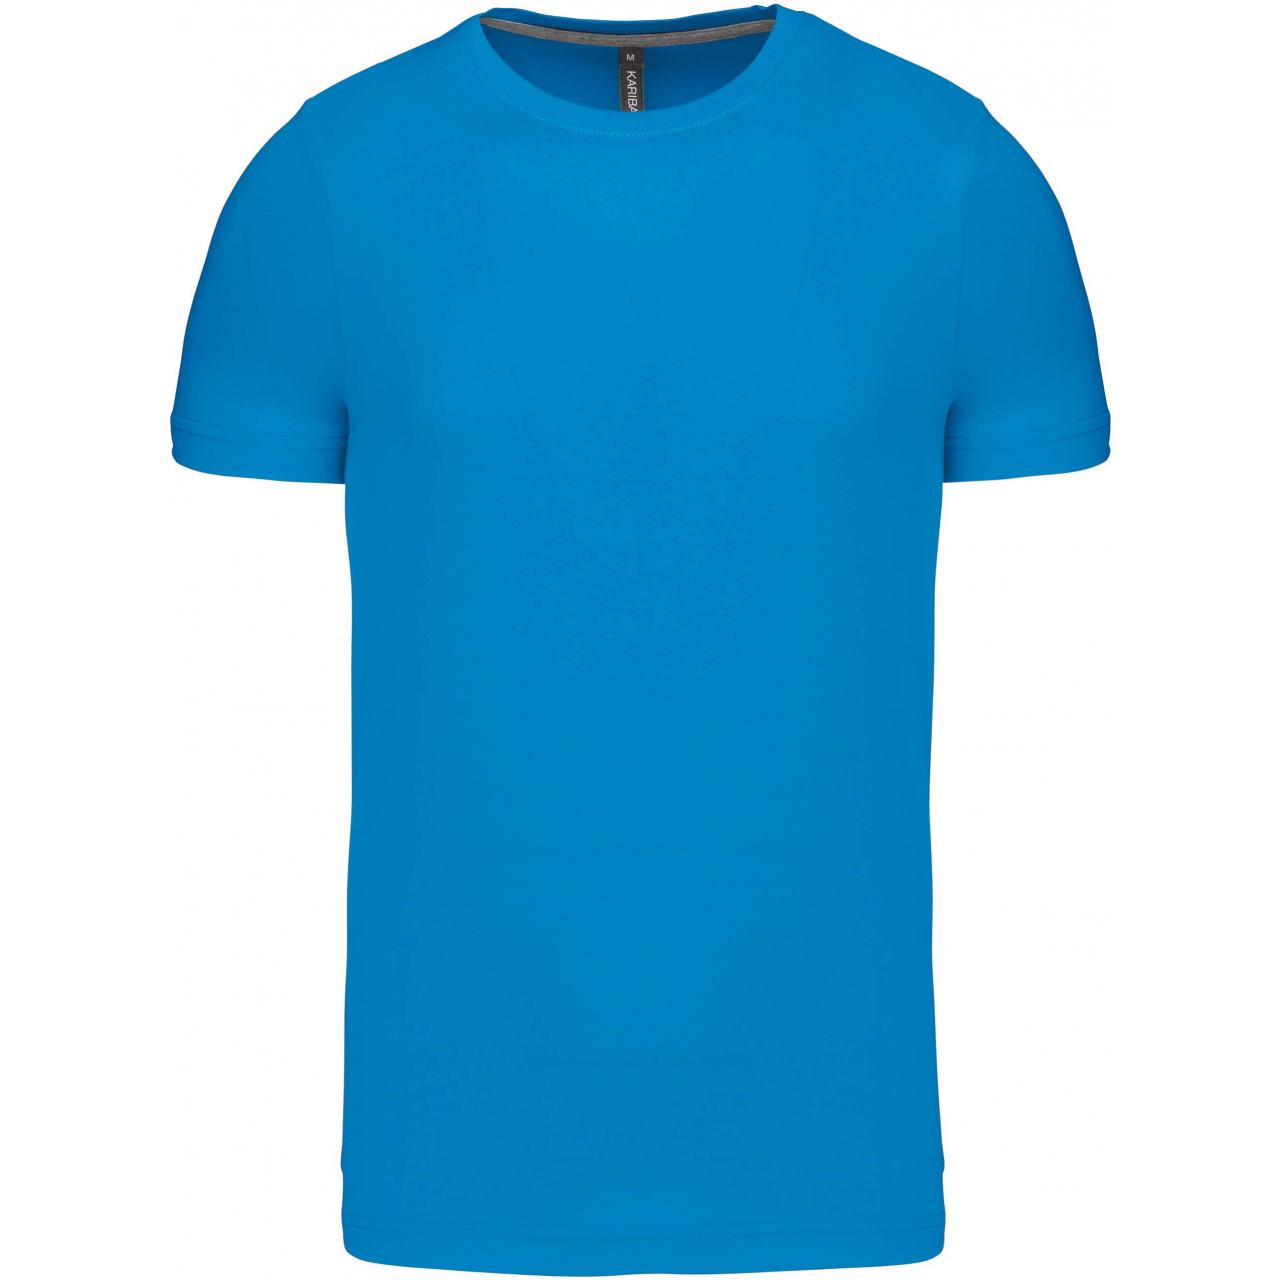 Pánské tričko Kariban krátký rukáv - středně modré, XXL